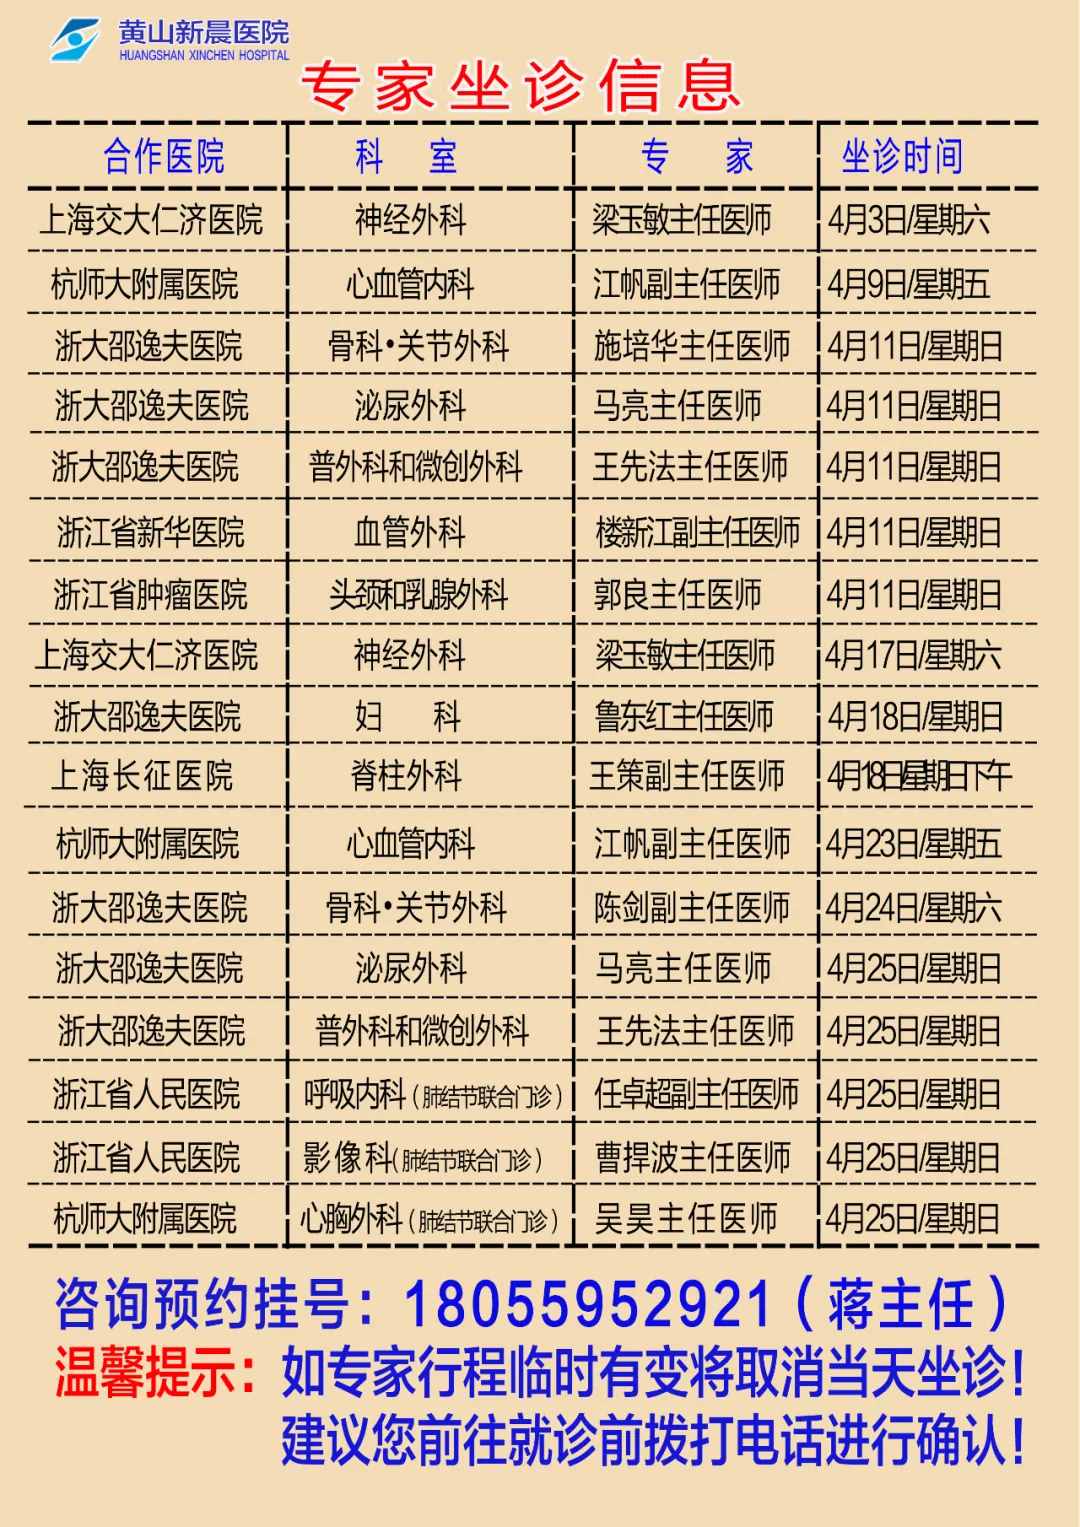 黄山新晨医院2021年4月份外请专家坐诊时间安排表